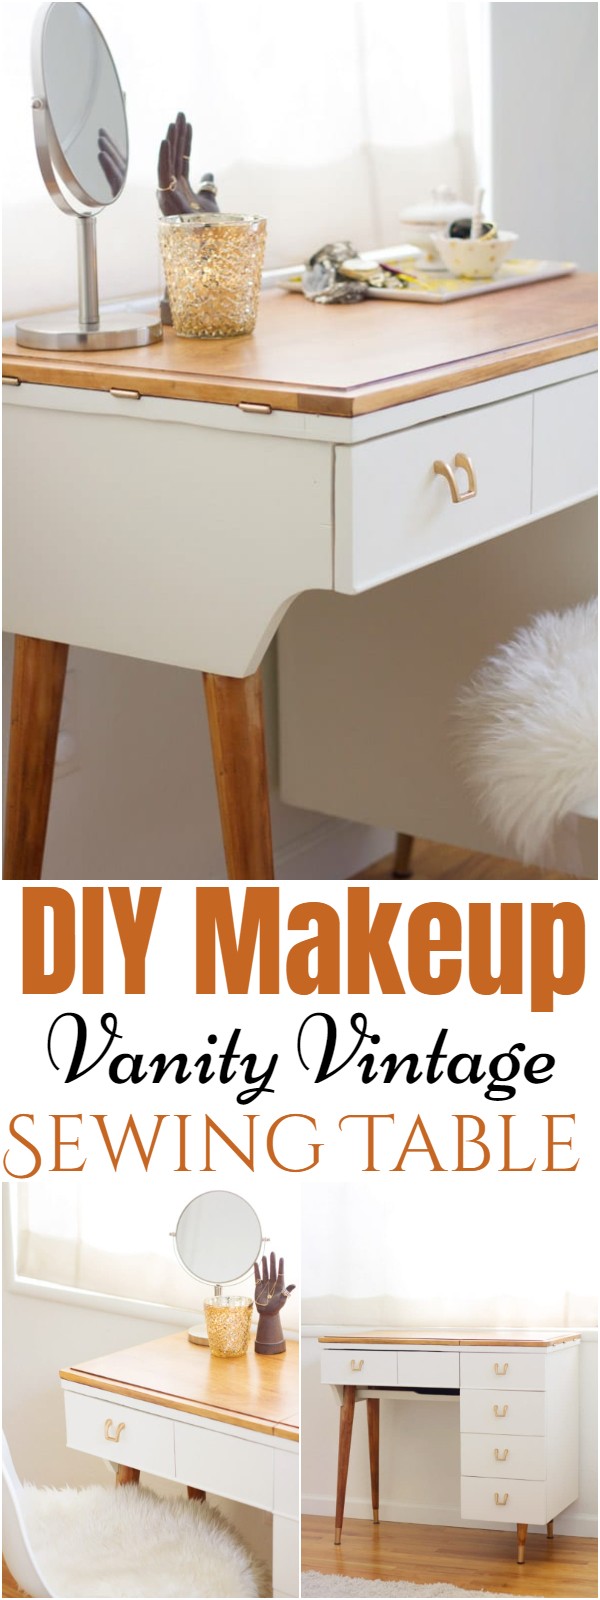 DIY Makeup Vanity Vintage Sewing Table